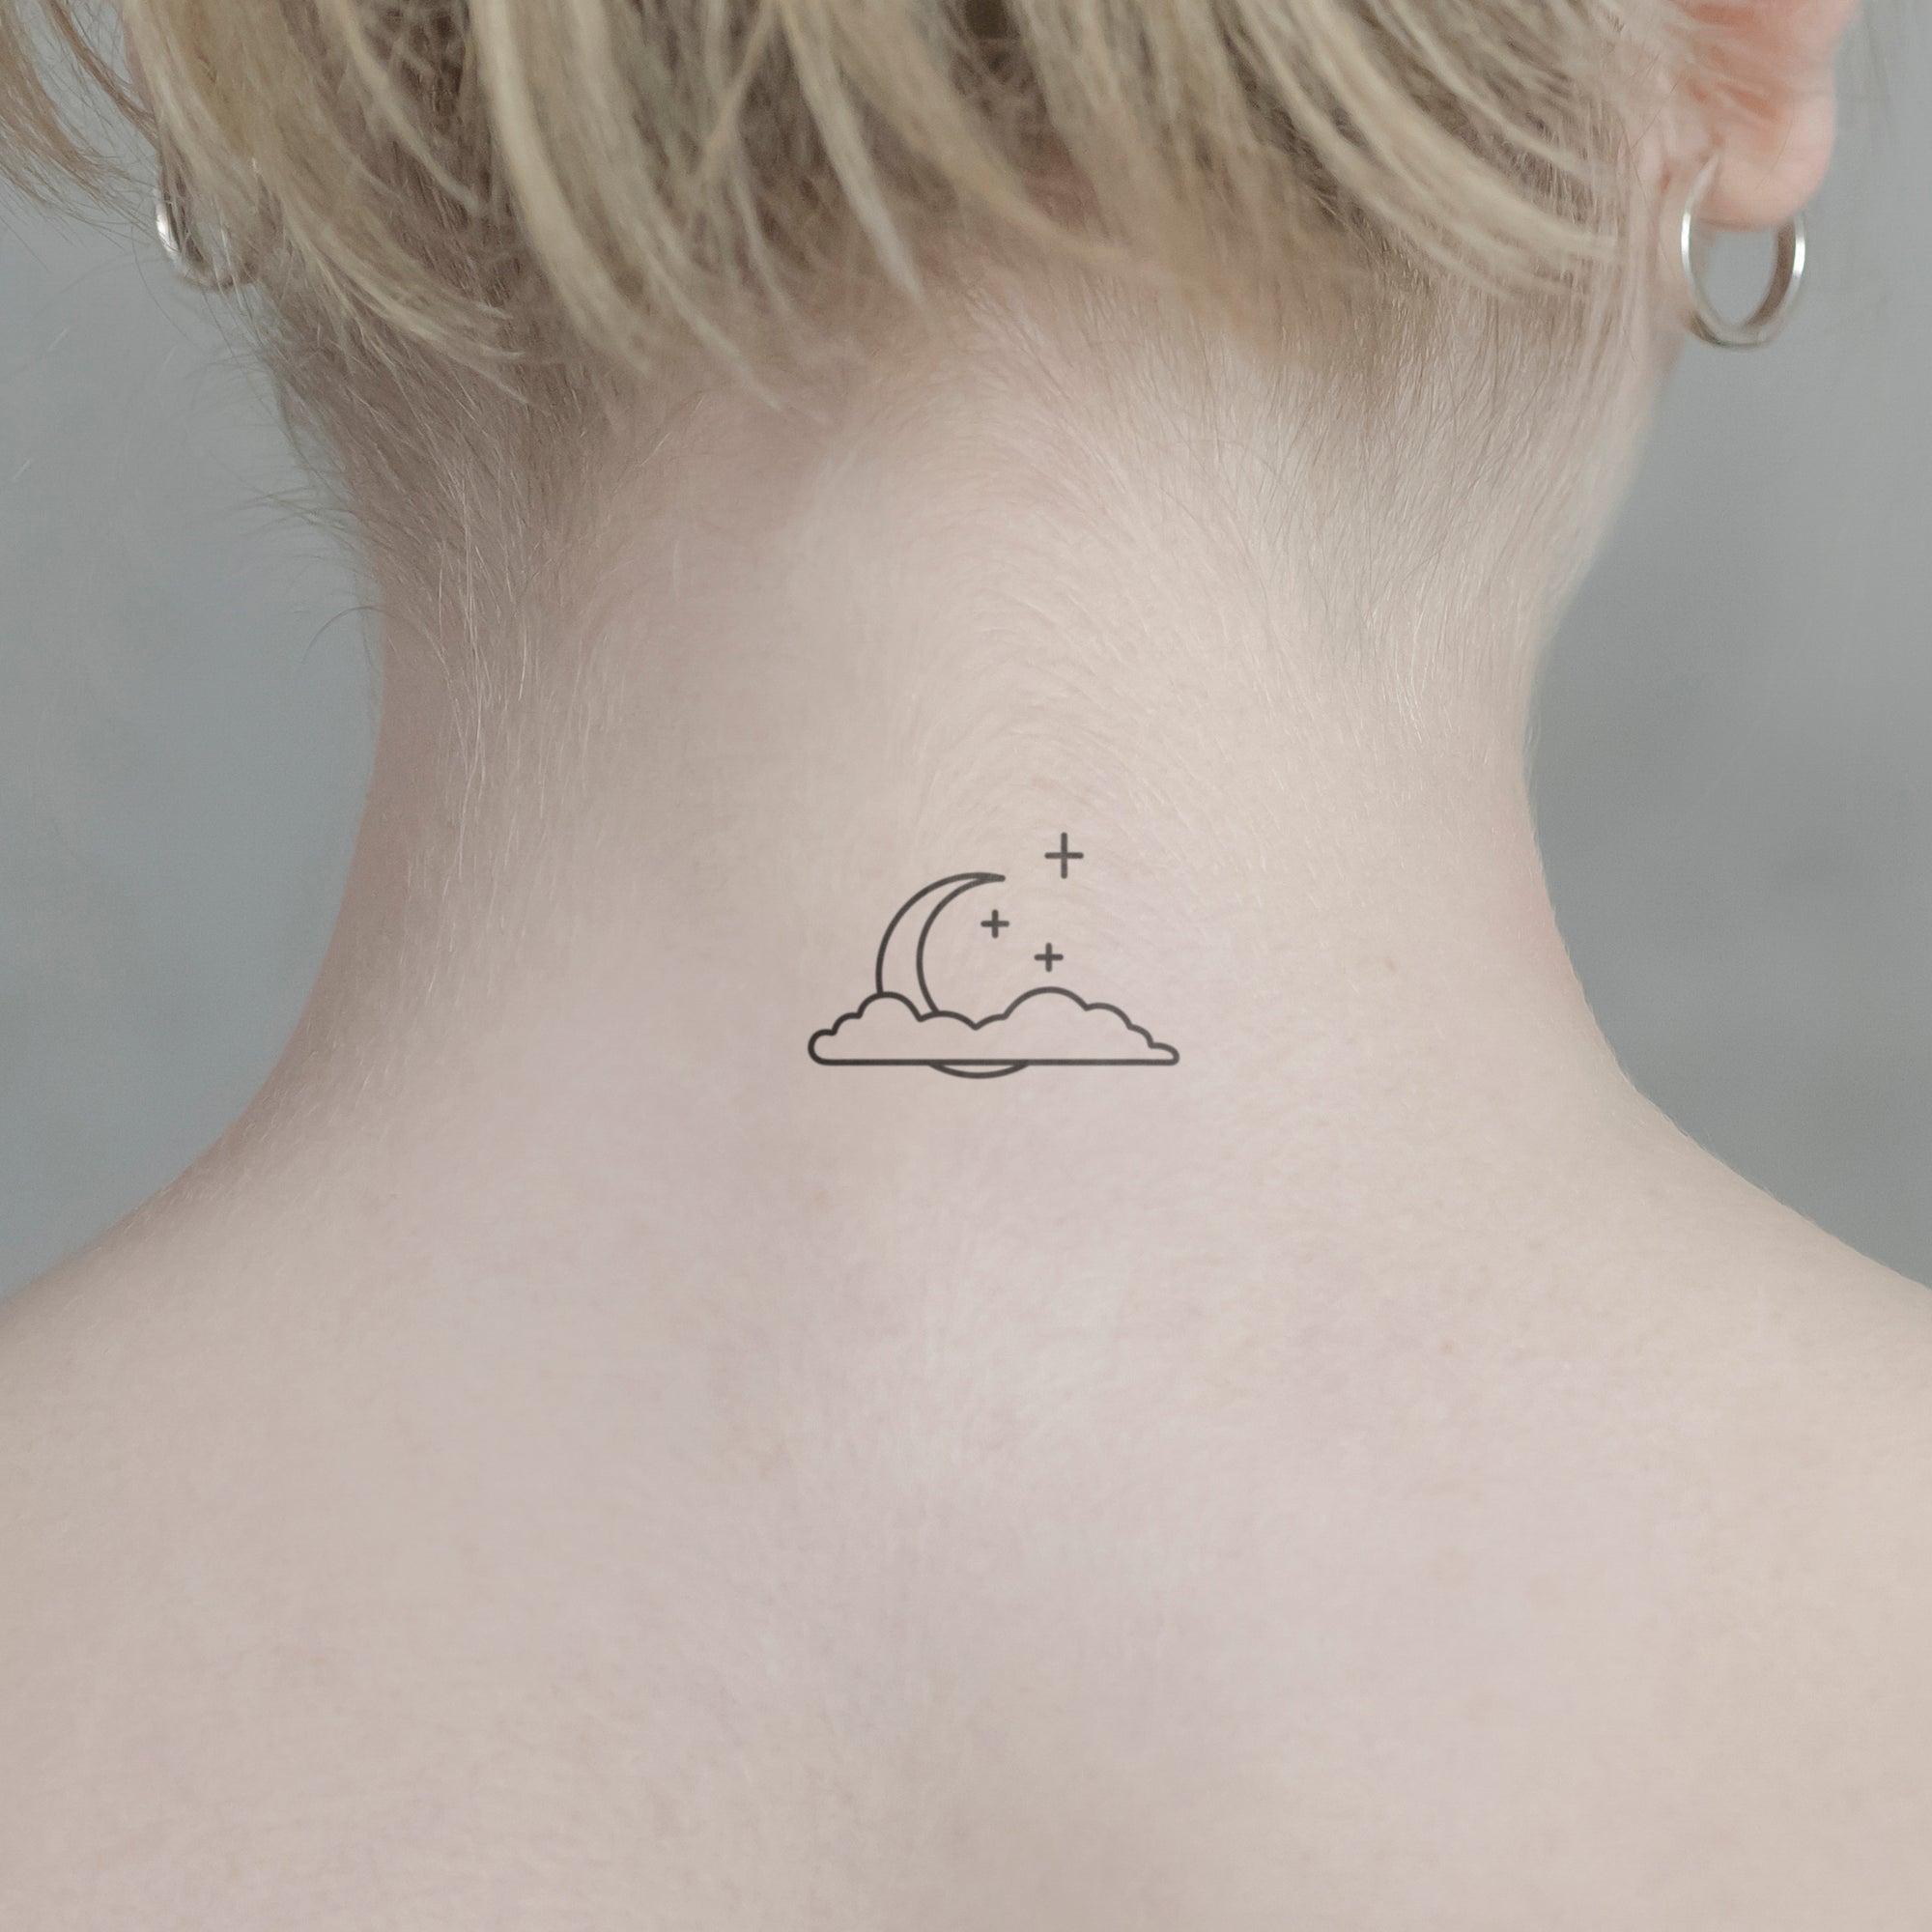 Mond mit Wolke Tattoo von minink, der Marke für temporäre Tattoos.